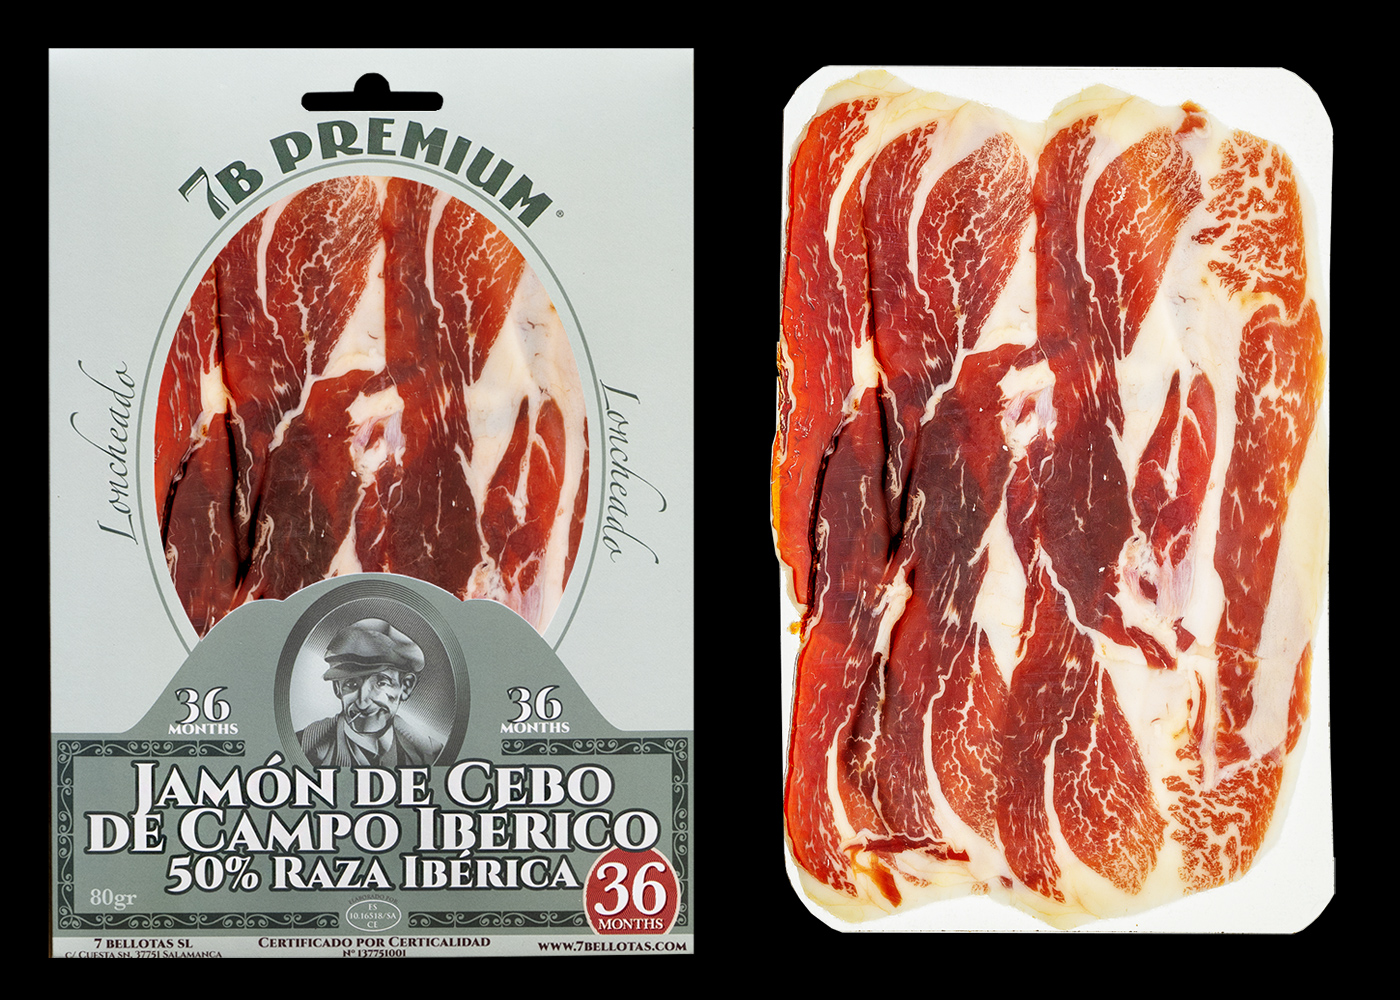 7B PREMIUM® Pata Negra 50% Iberico Spanish Ham sliced vacuum pack